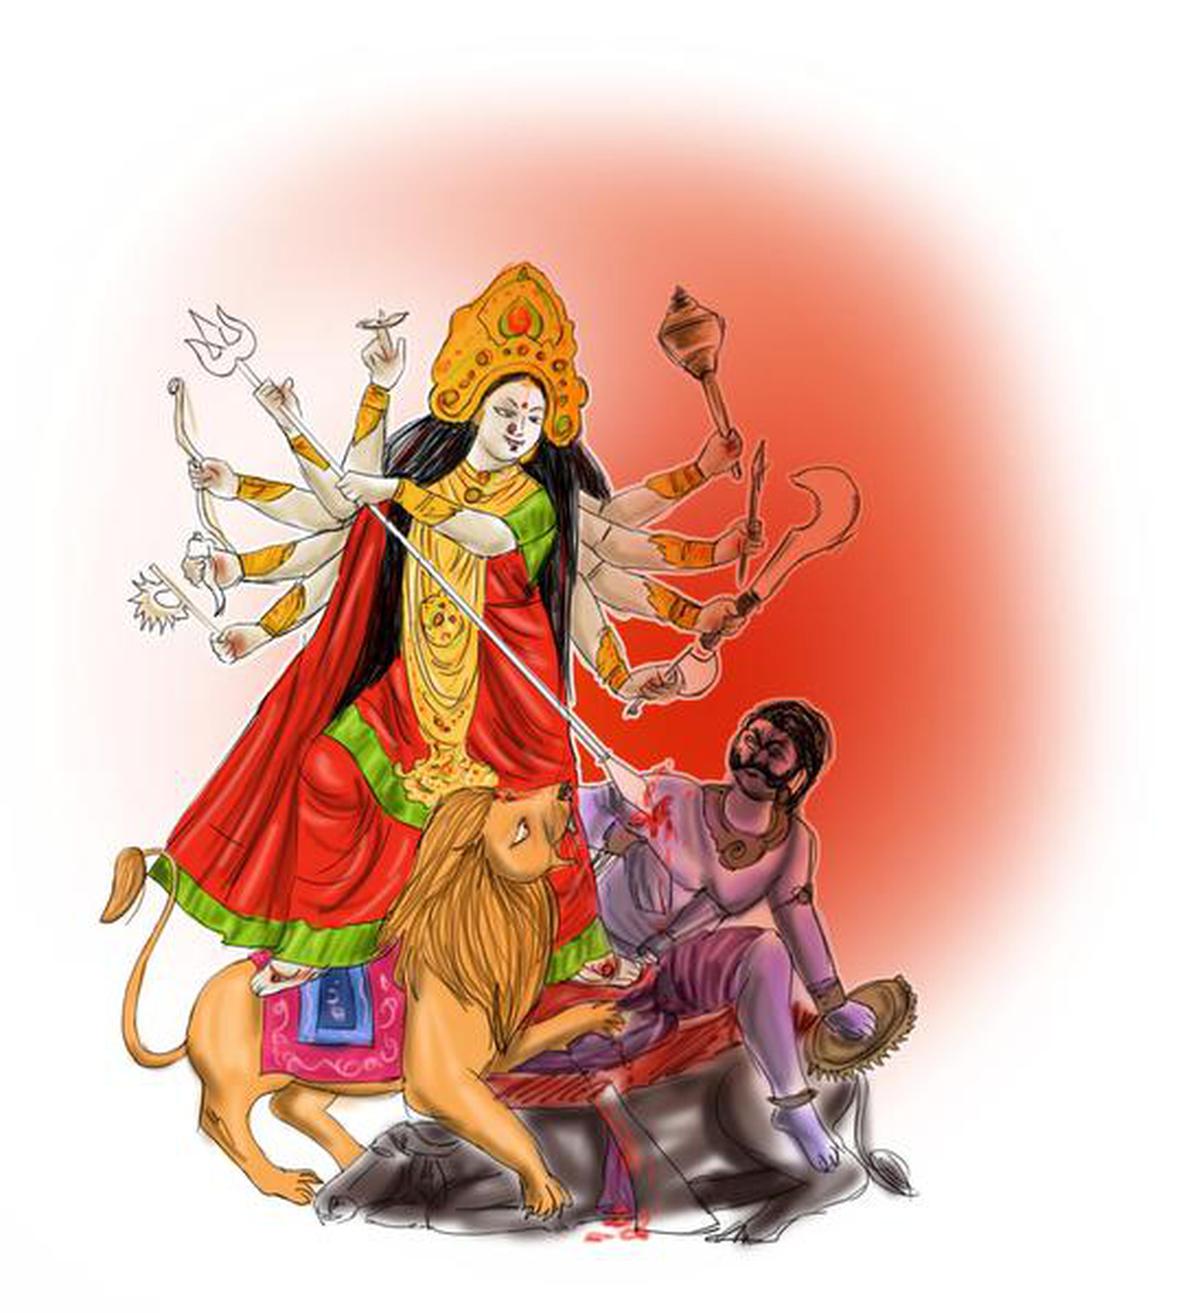 Spellbinding stories - The Hindu